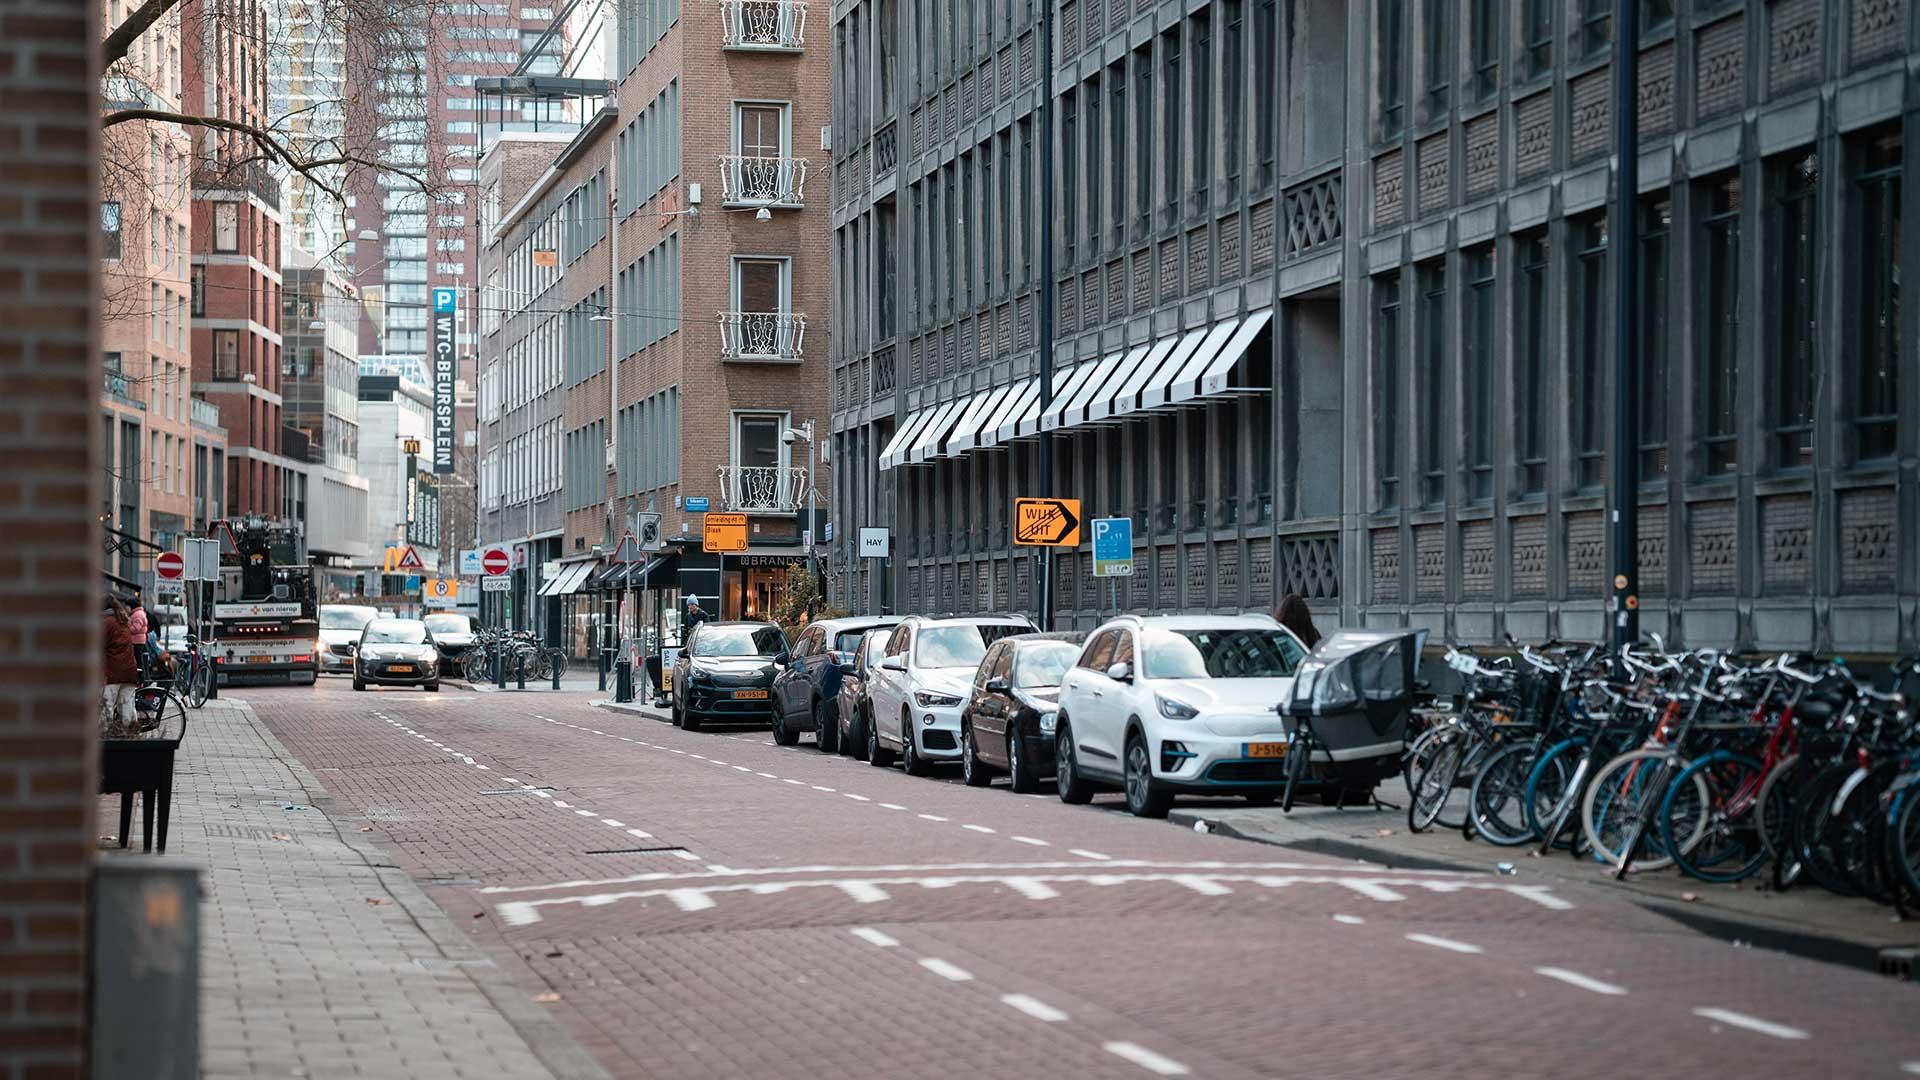 Straat in Amsterdam met een drempel en geparkeerde auto's